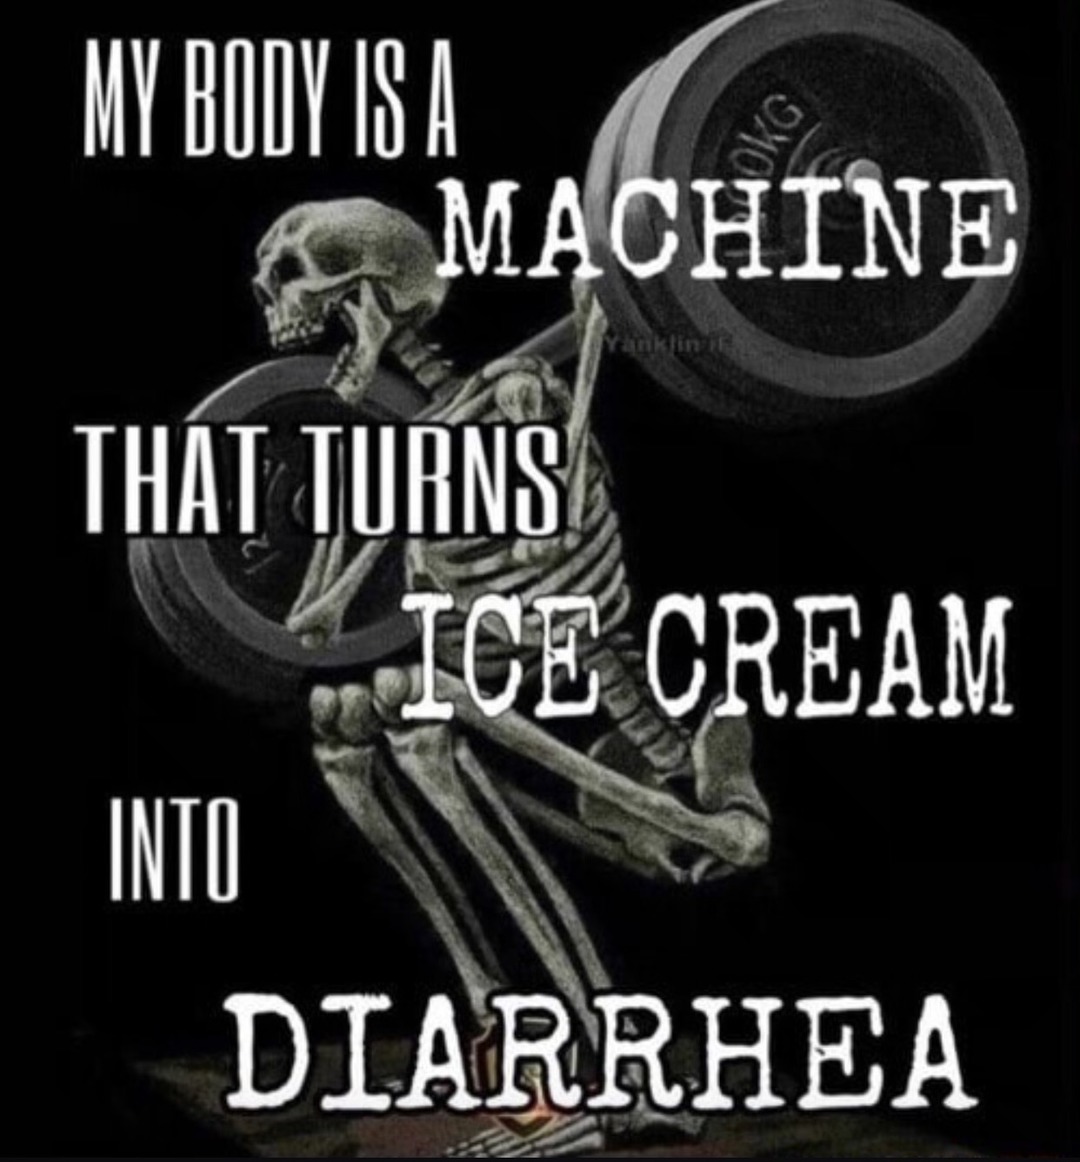 The ice cream diet - meme